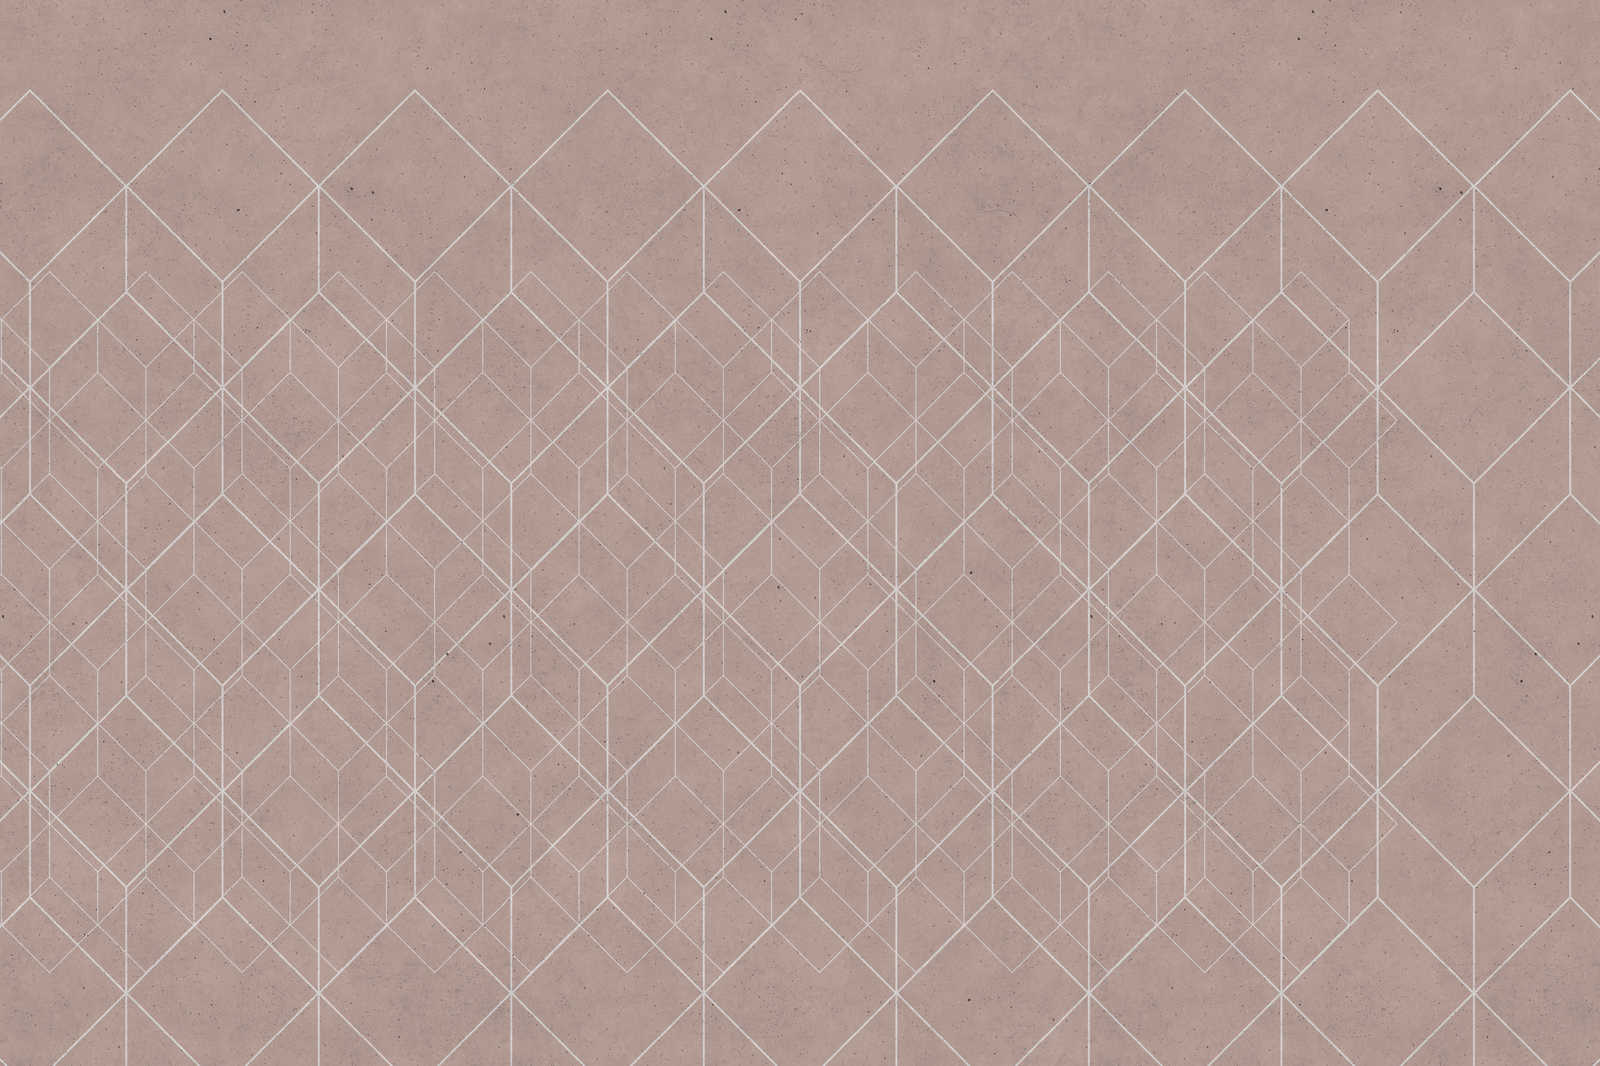             Leinwandbild geometrisches Muster | beige, weiß – 0,90 m x 0,60 m
        